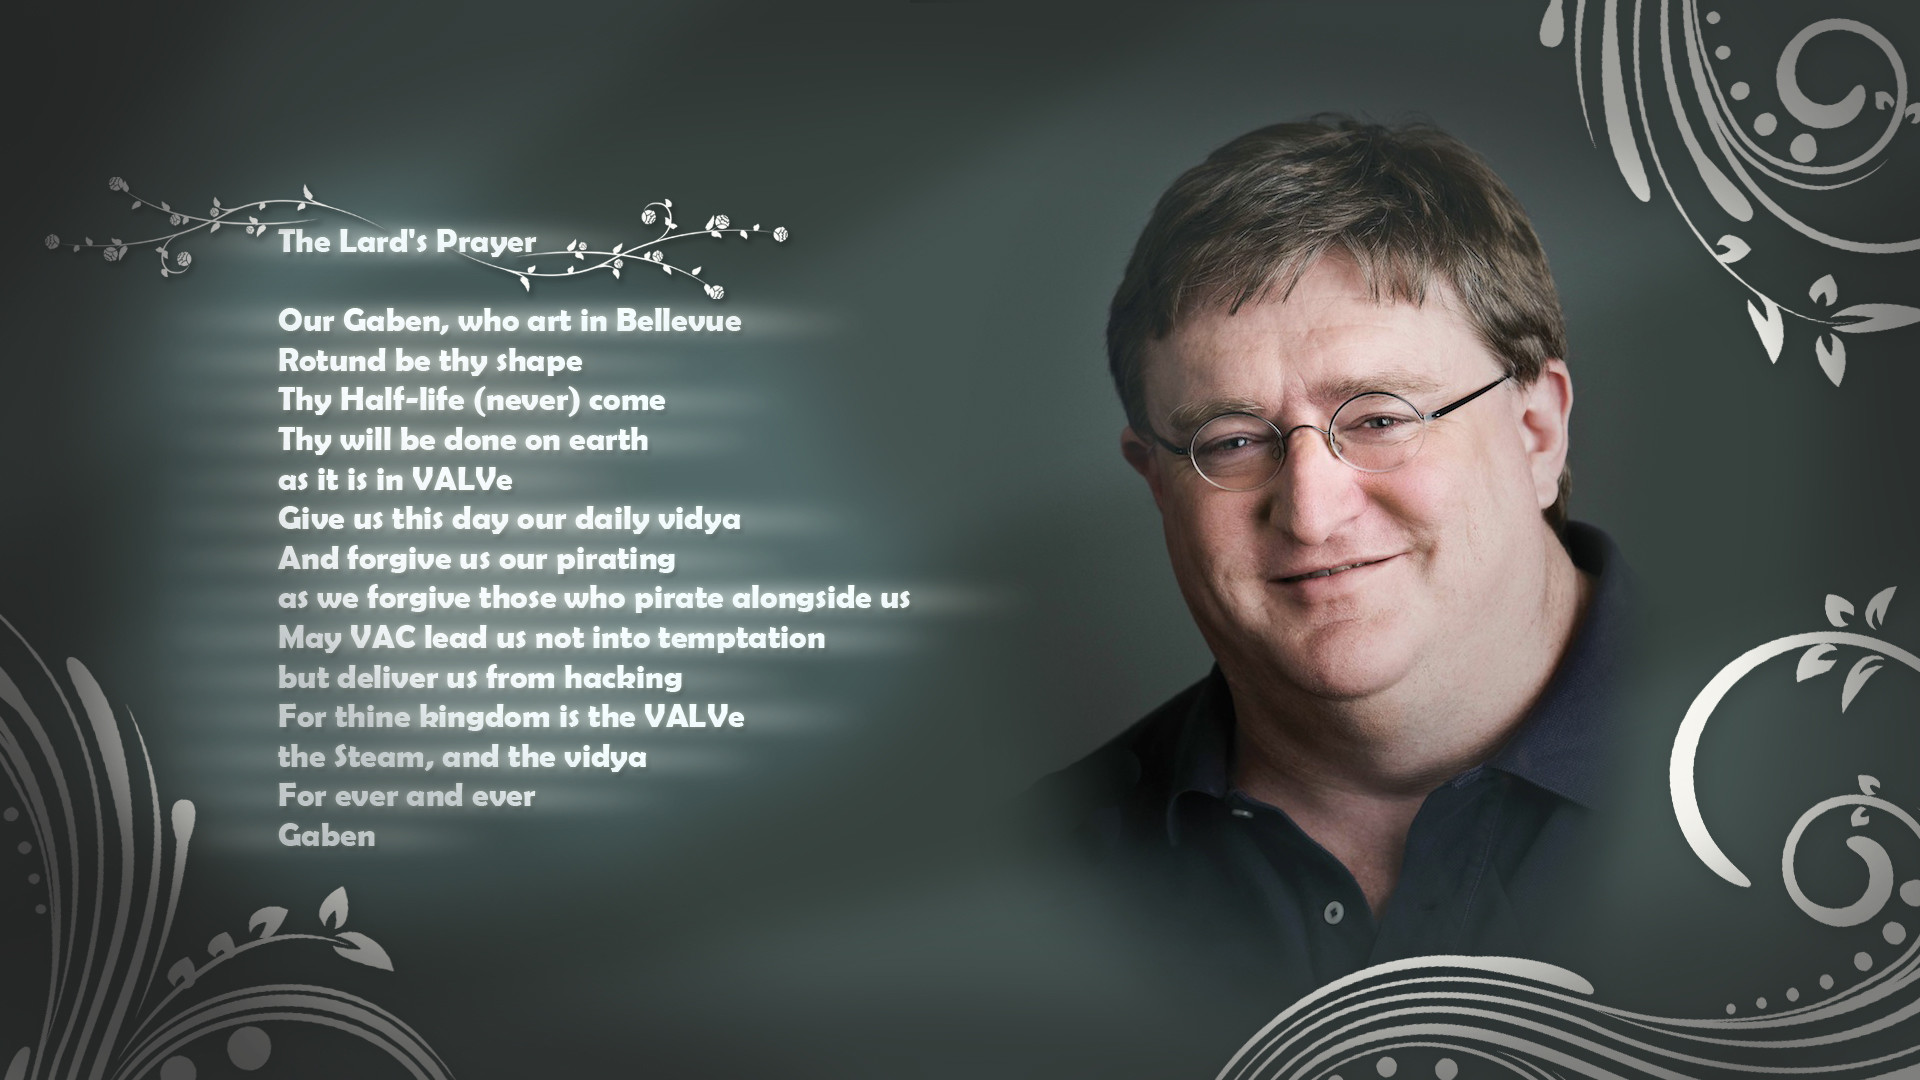 1920x1080 Gabe Newell The Lard's Prayer Prayer text humor wallpaper |   | 73746 | WallpaperUP